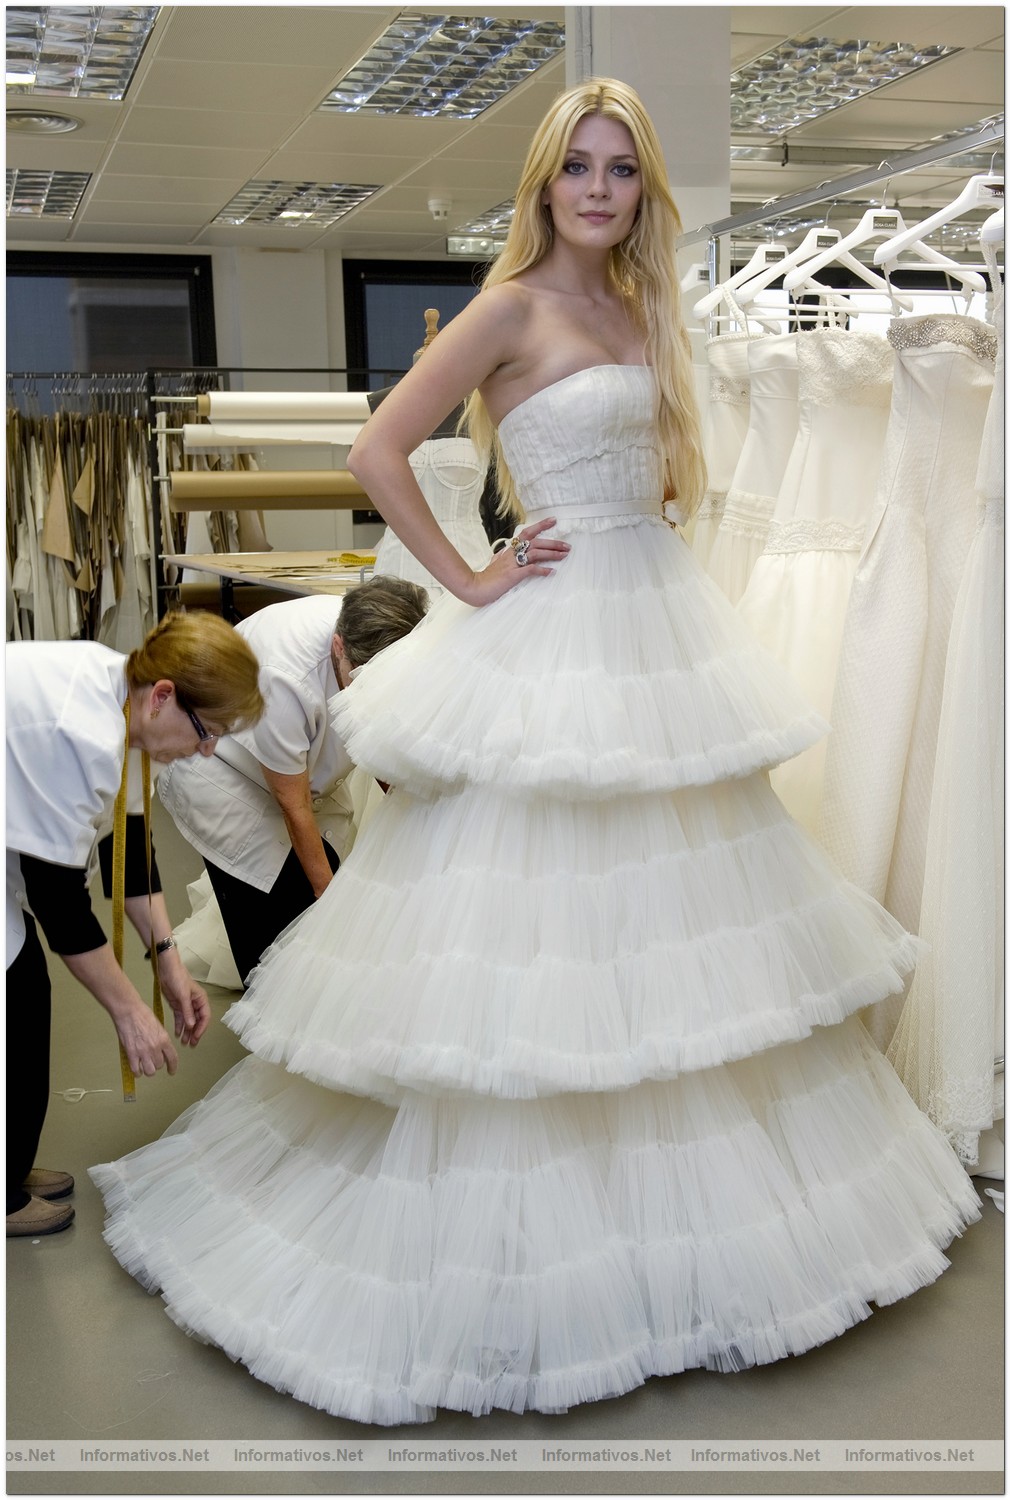 BCN17MAY010.- La actriz internacional Mischa Barton se viste de blanco por Rosa Clará en el fitting previo al primer desfile de la Bridal Week